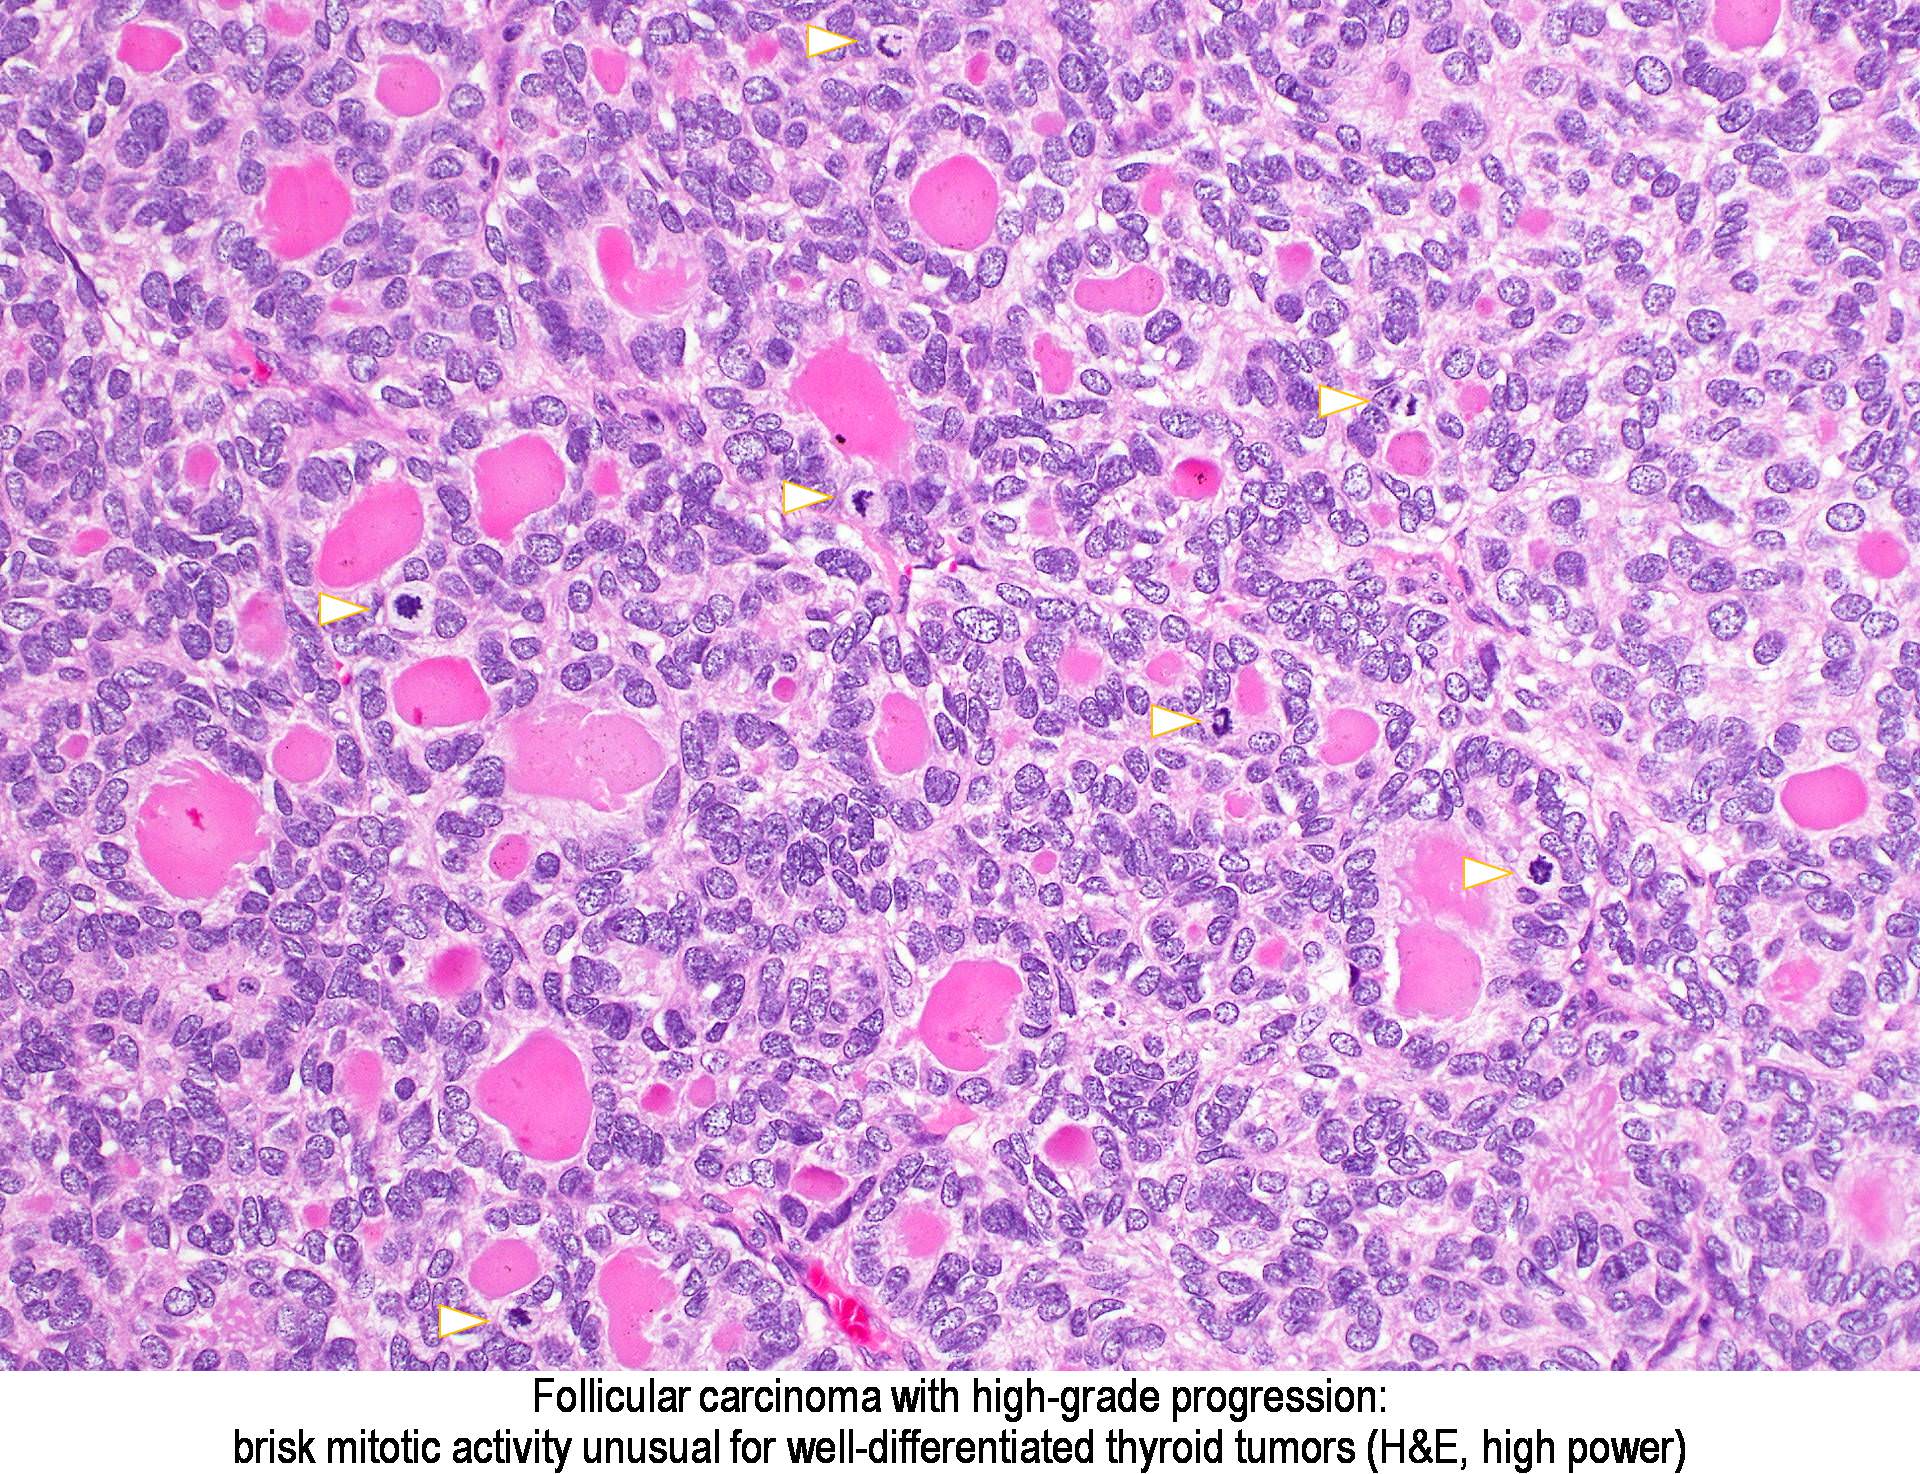 Pathology Outlines - Follicular carcinoma